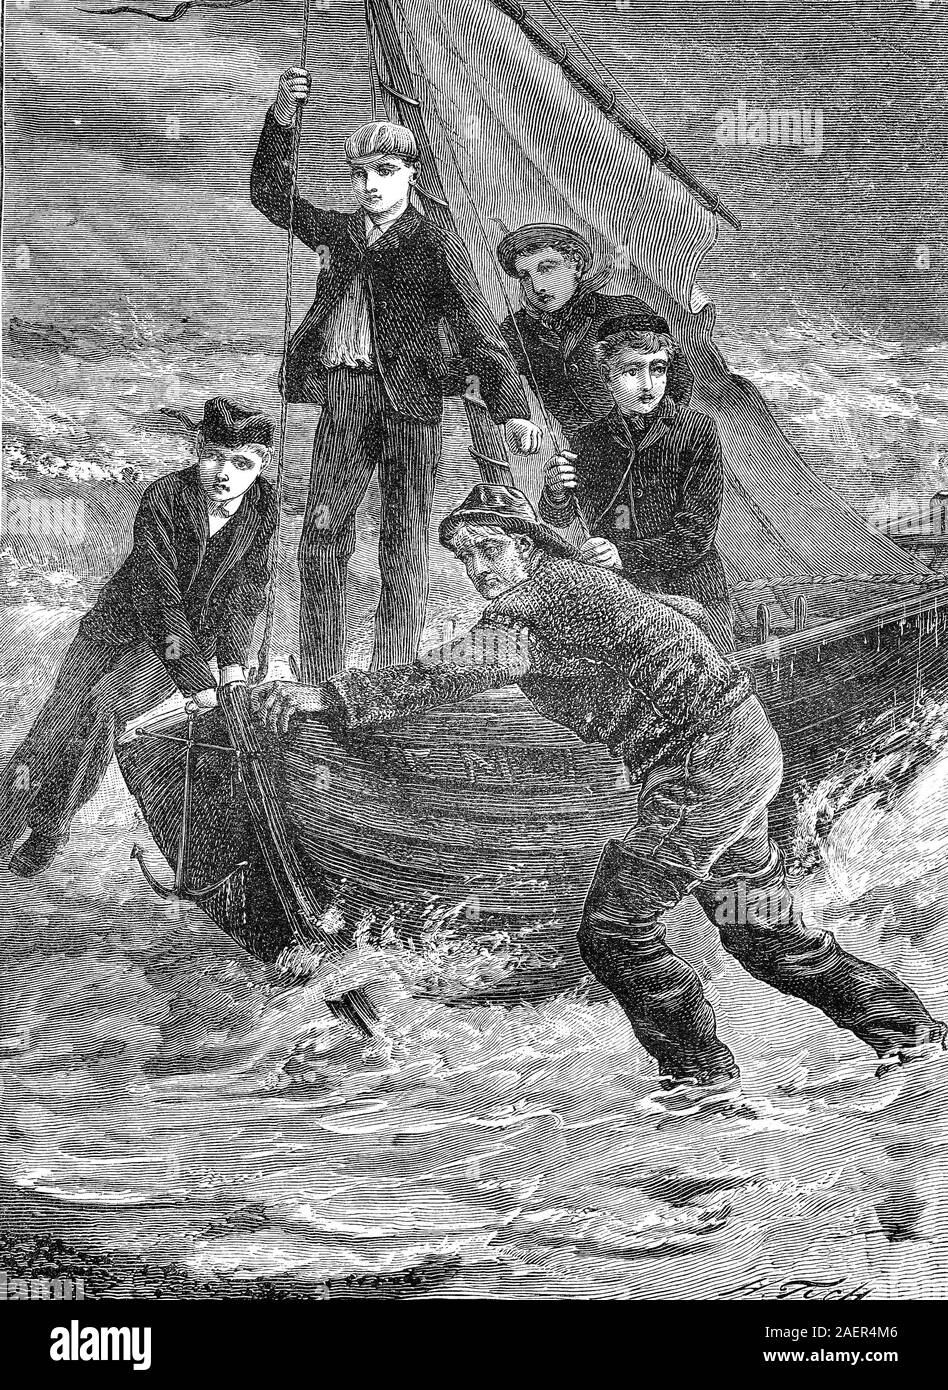 Men bring a boat to the beach  /  Männer bringen ein Boot an den Strand, Reproduction of an original 19th century print / Reproduktion von einem Originaldruck aus dem 19. Jahrhundert Stock Photo